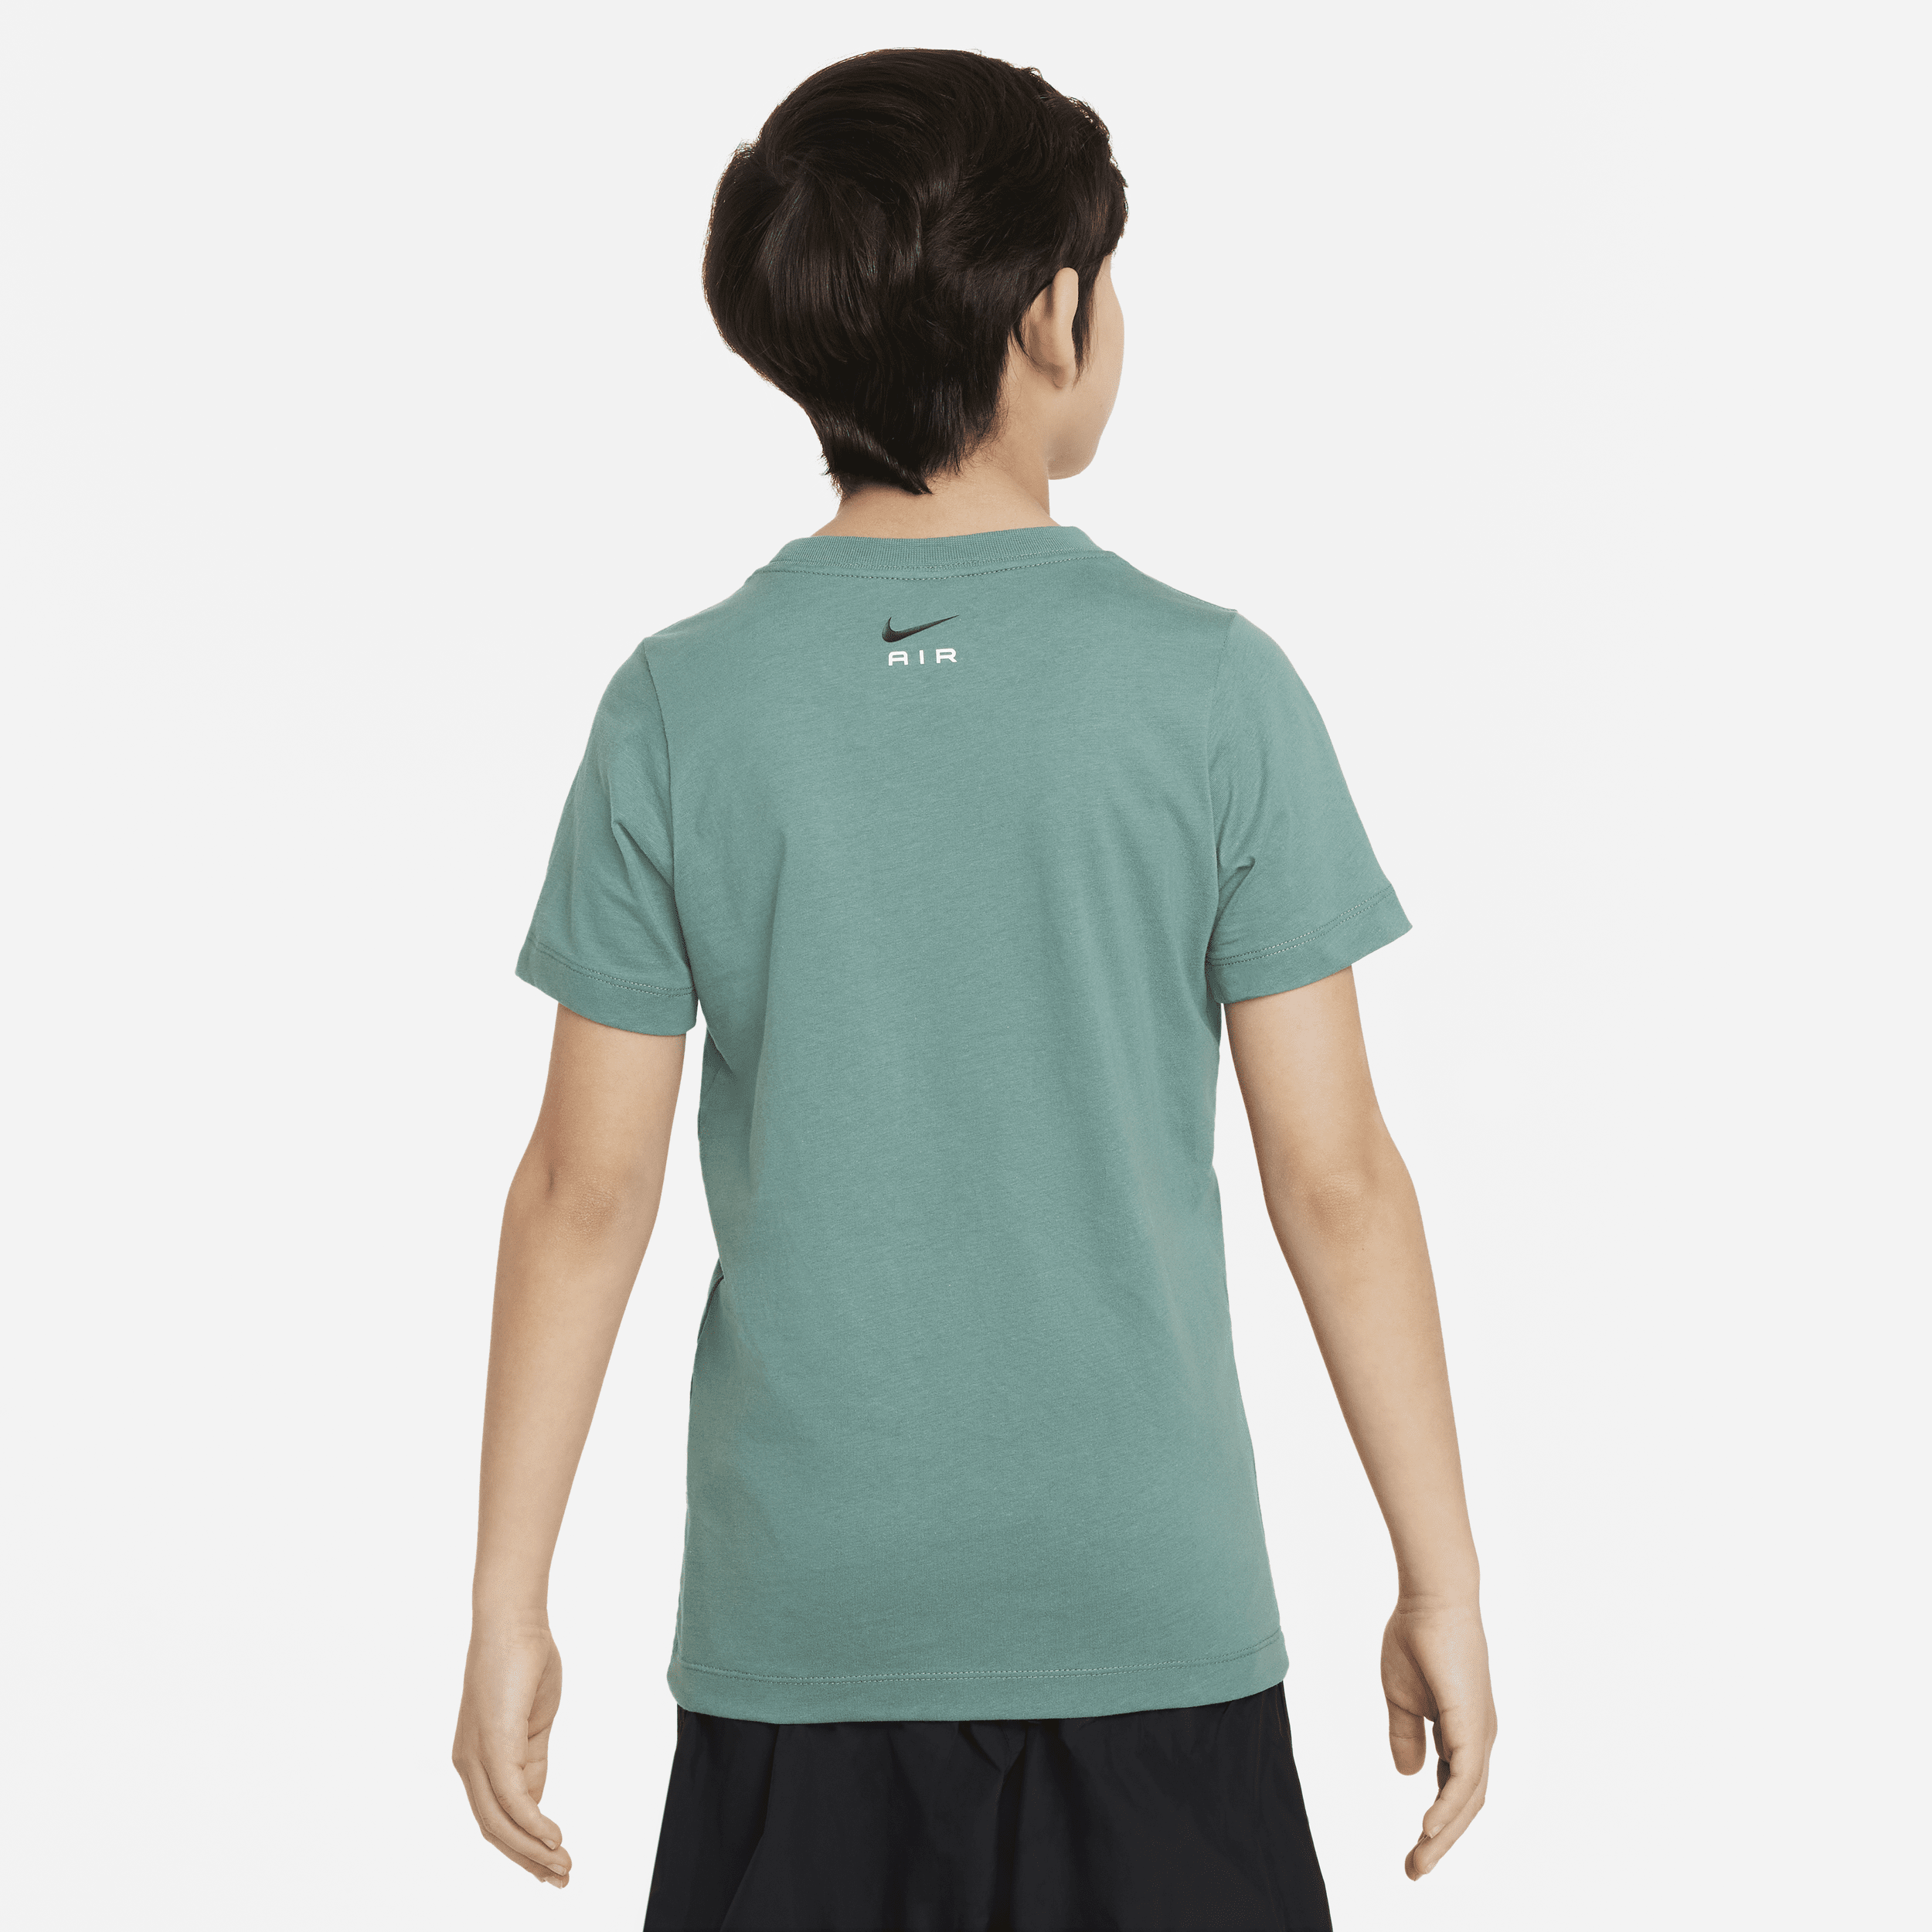 Nike Air T-shirt voor jongens Groen